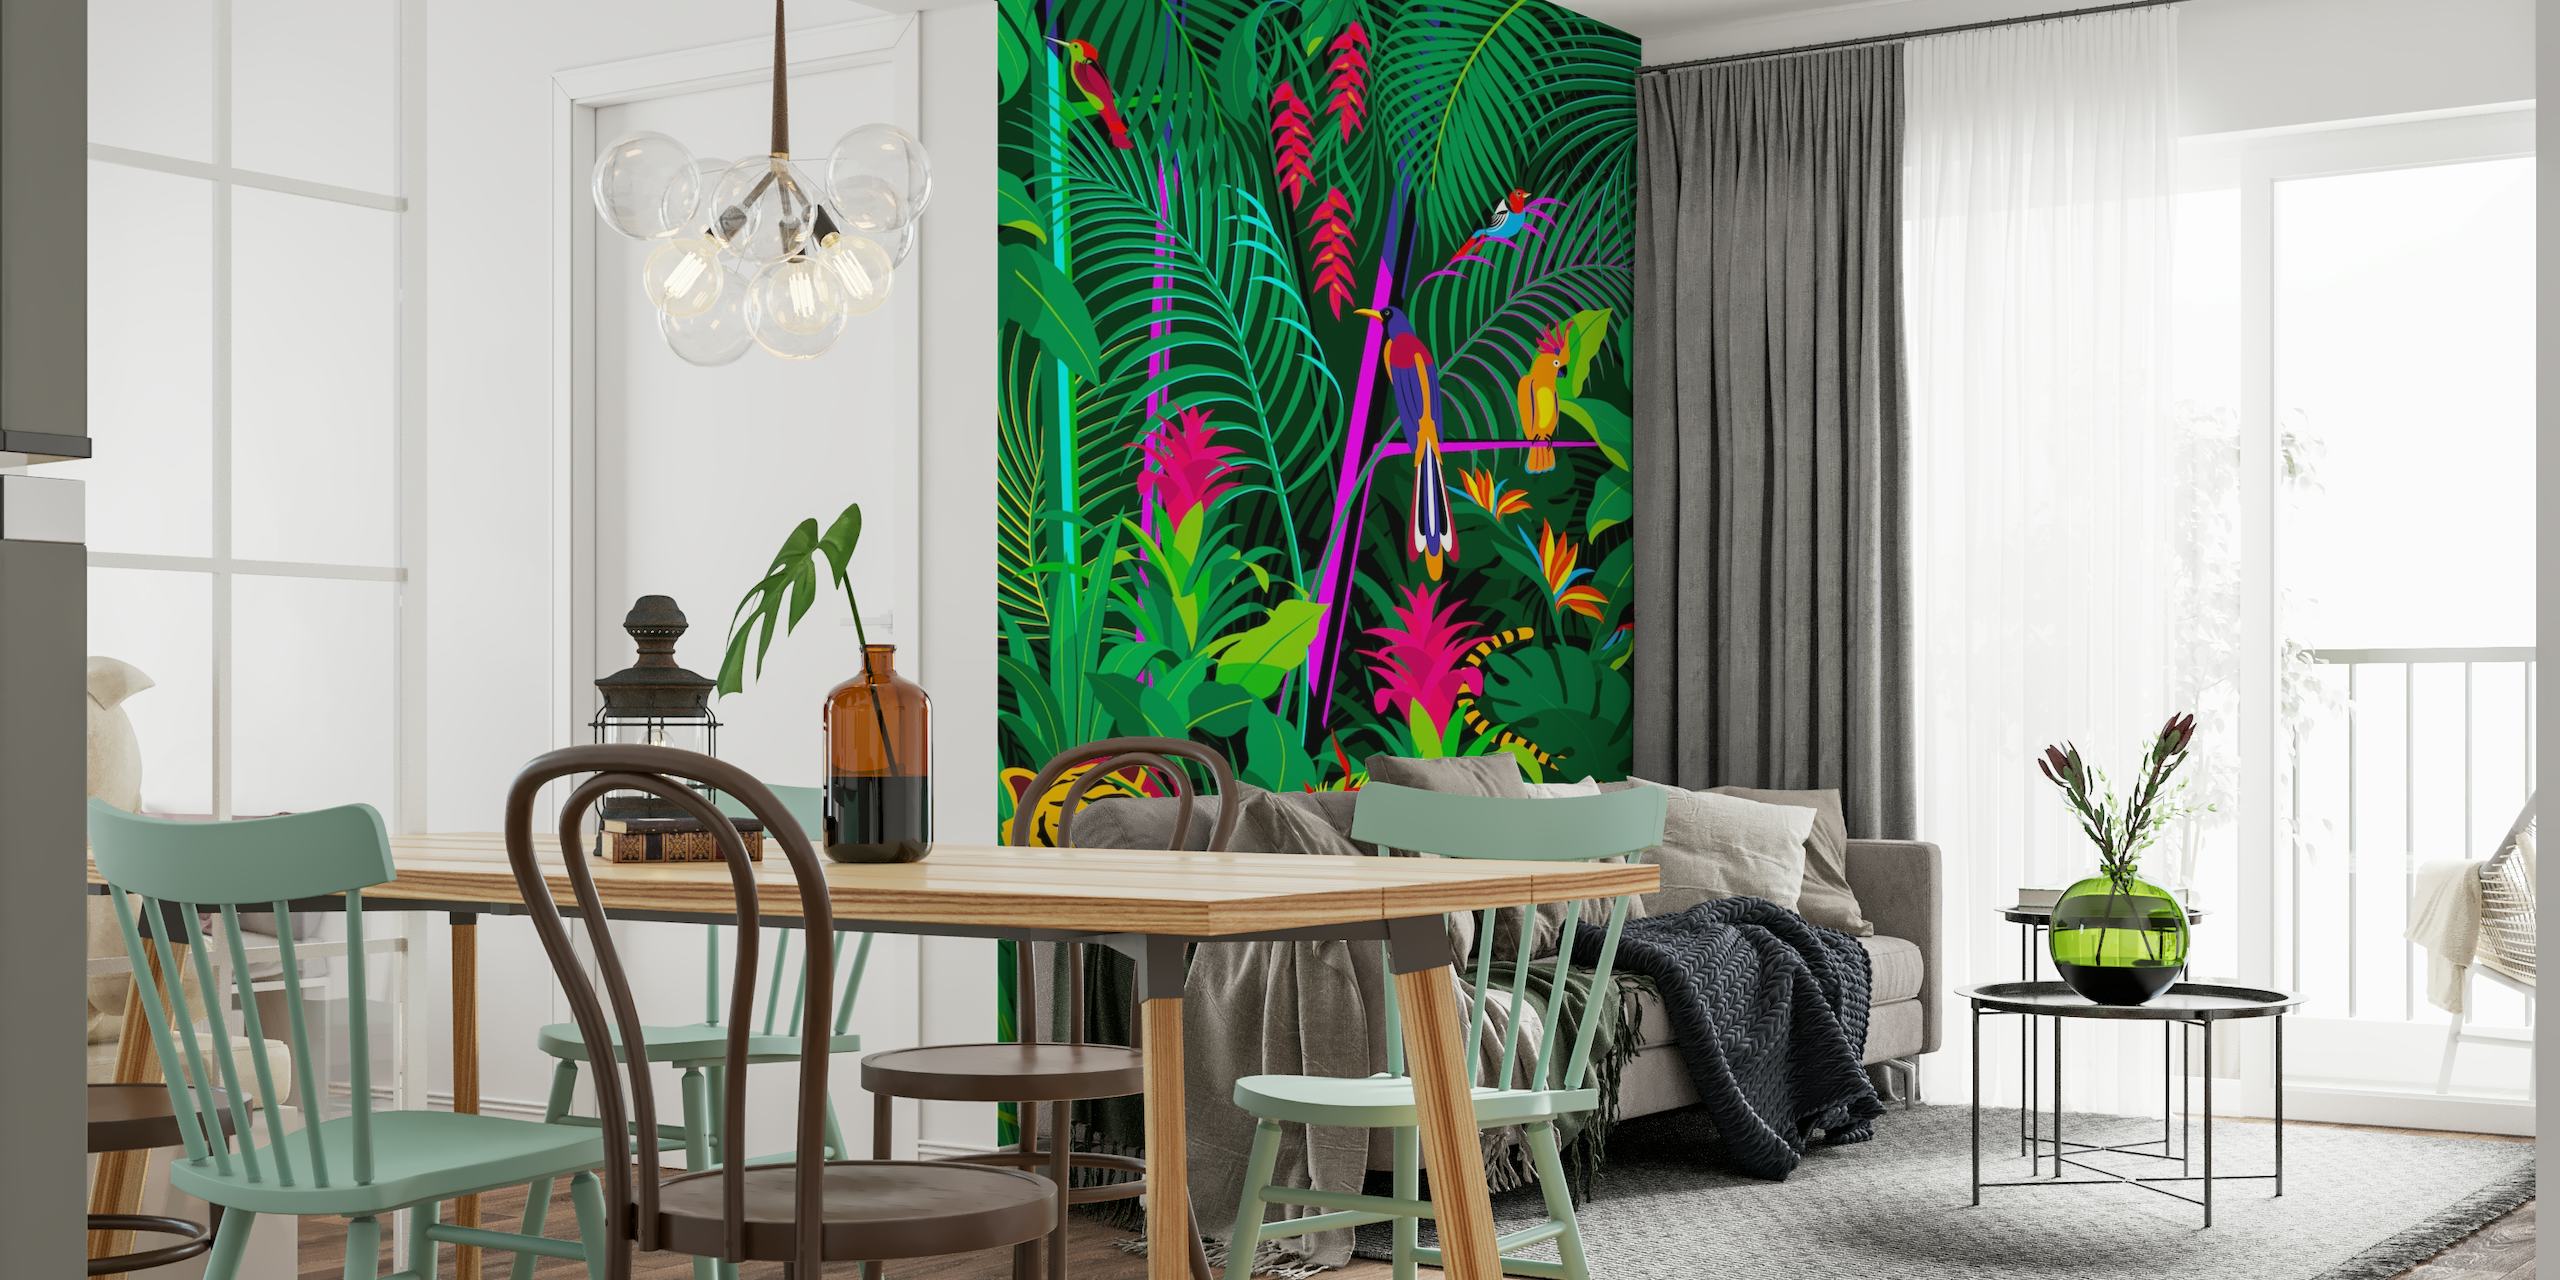 Mural de parede de selva tropical com folhagem verde densa, flores coloridas e um tigre escondido